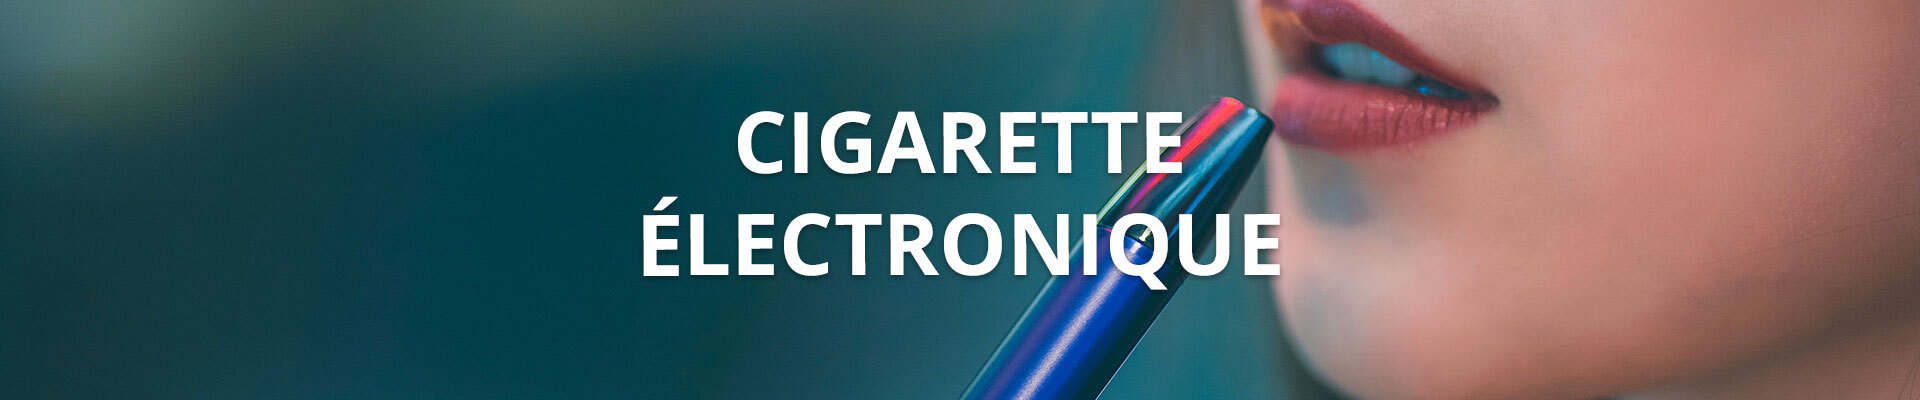 Cigarette électronique - Divers